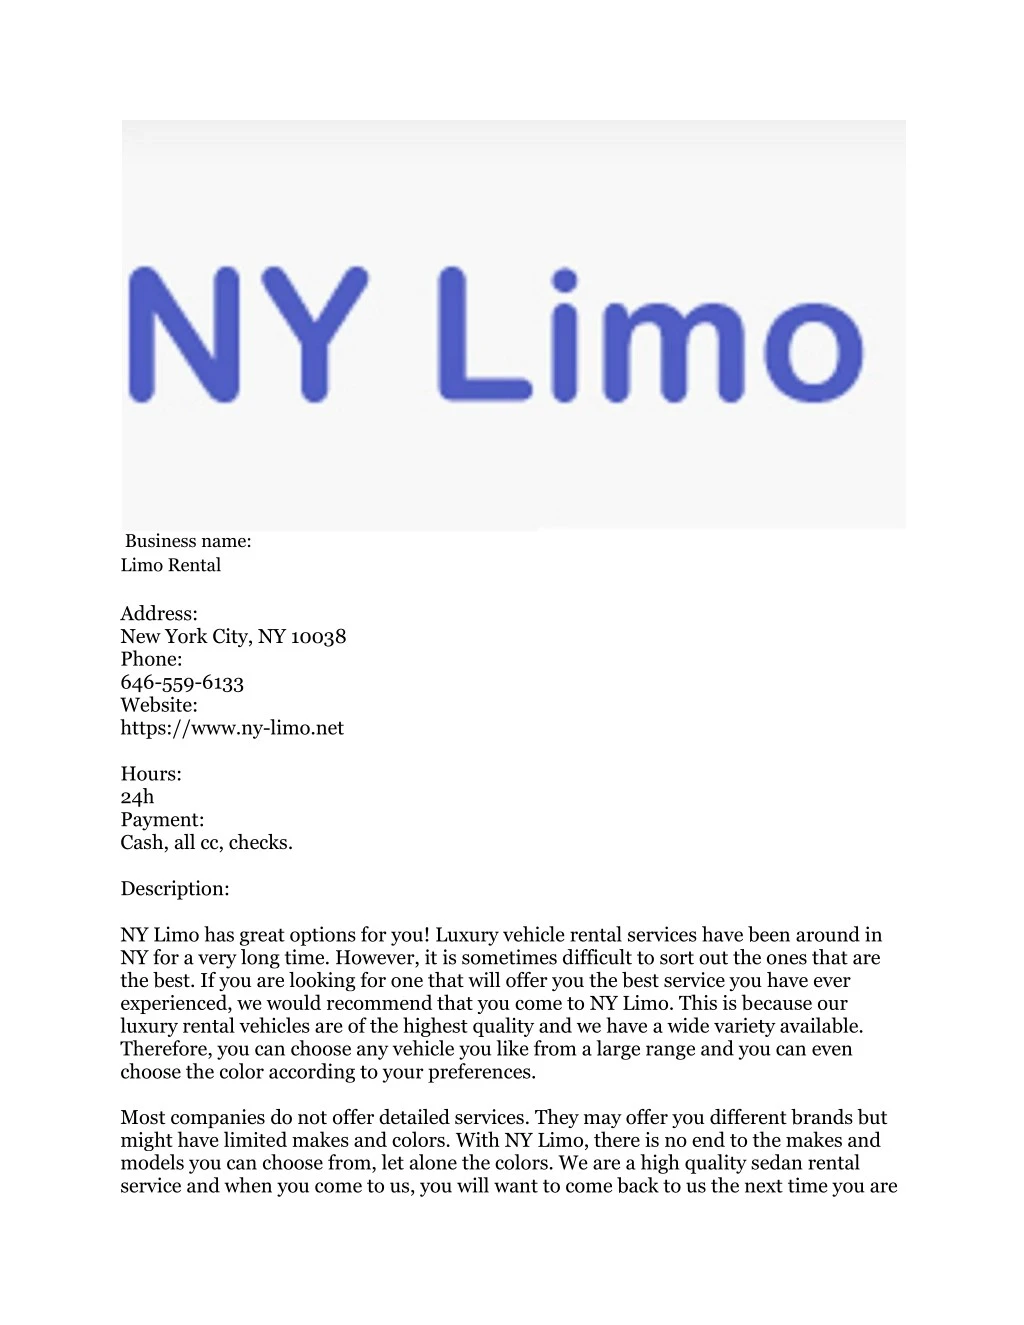 business name limo rental